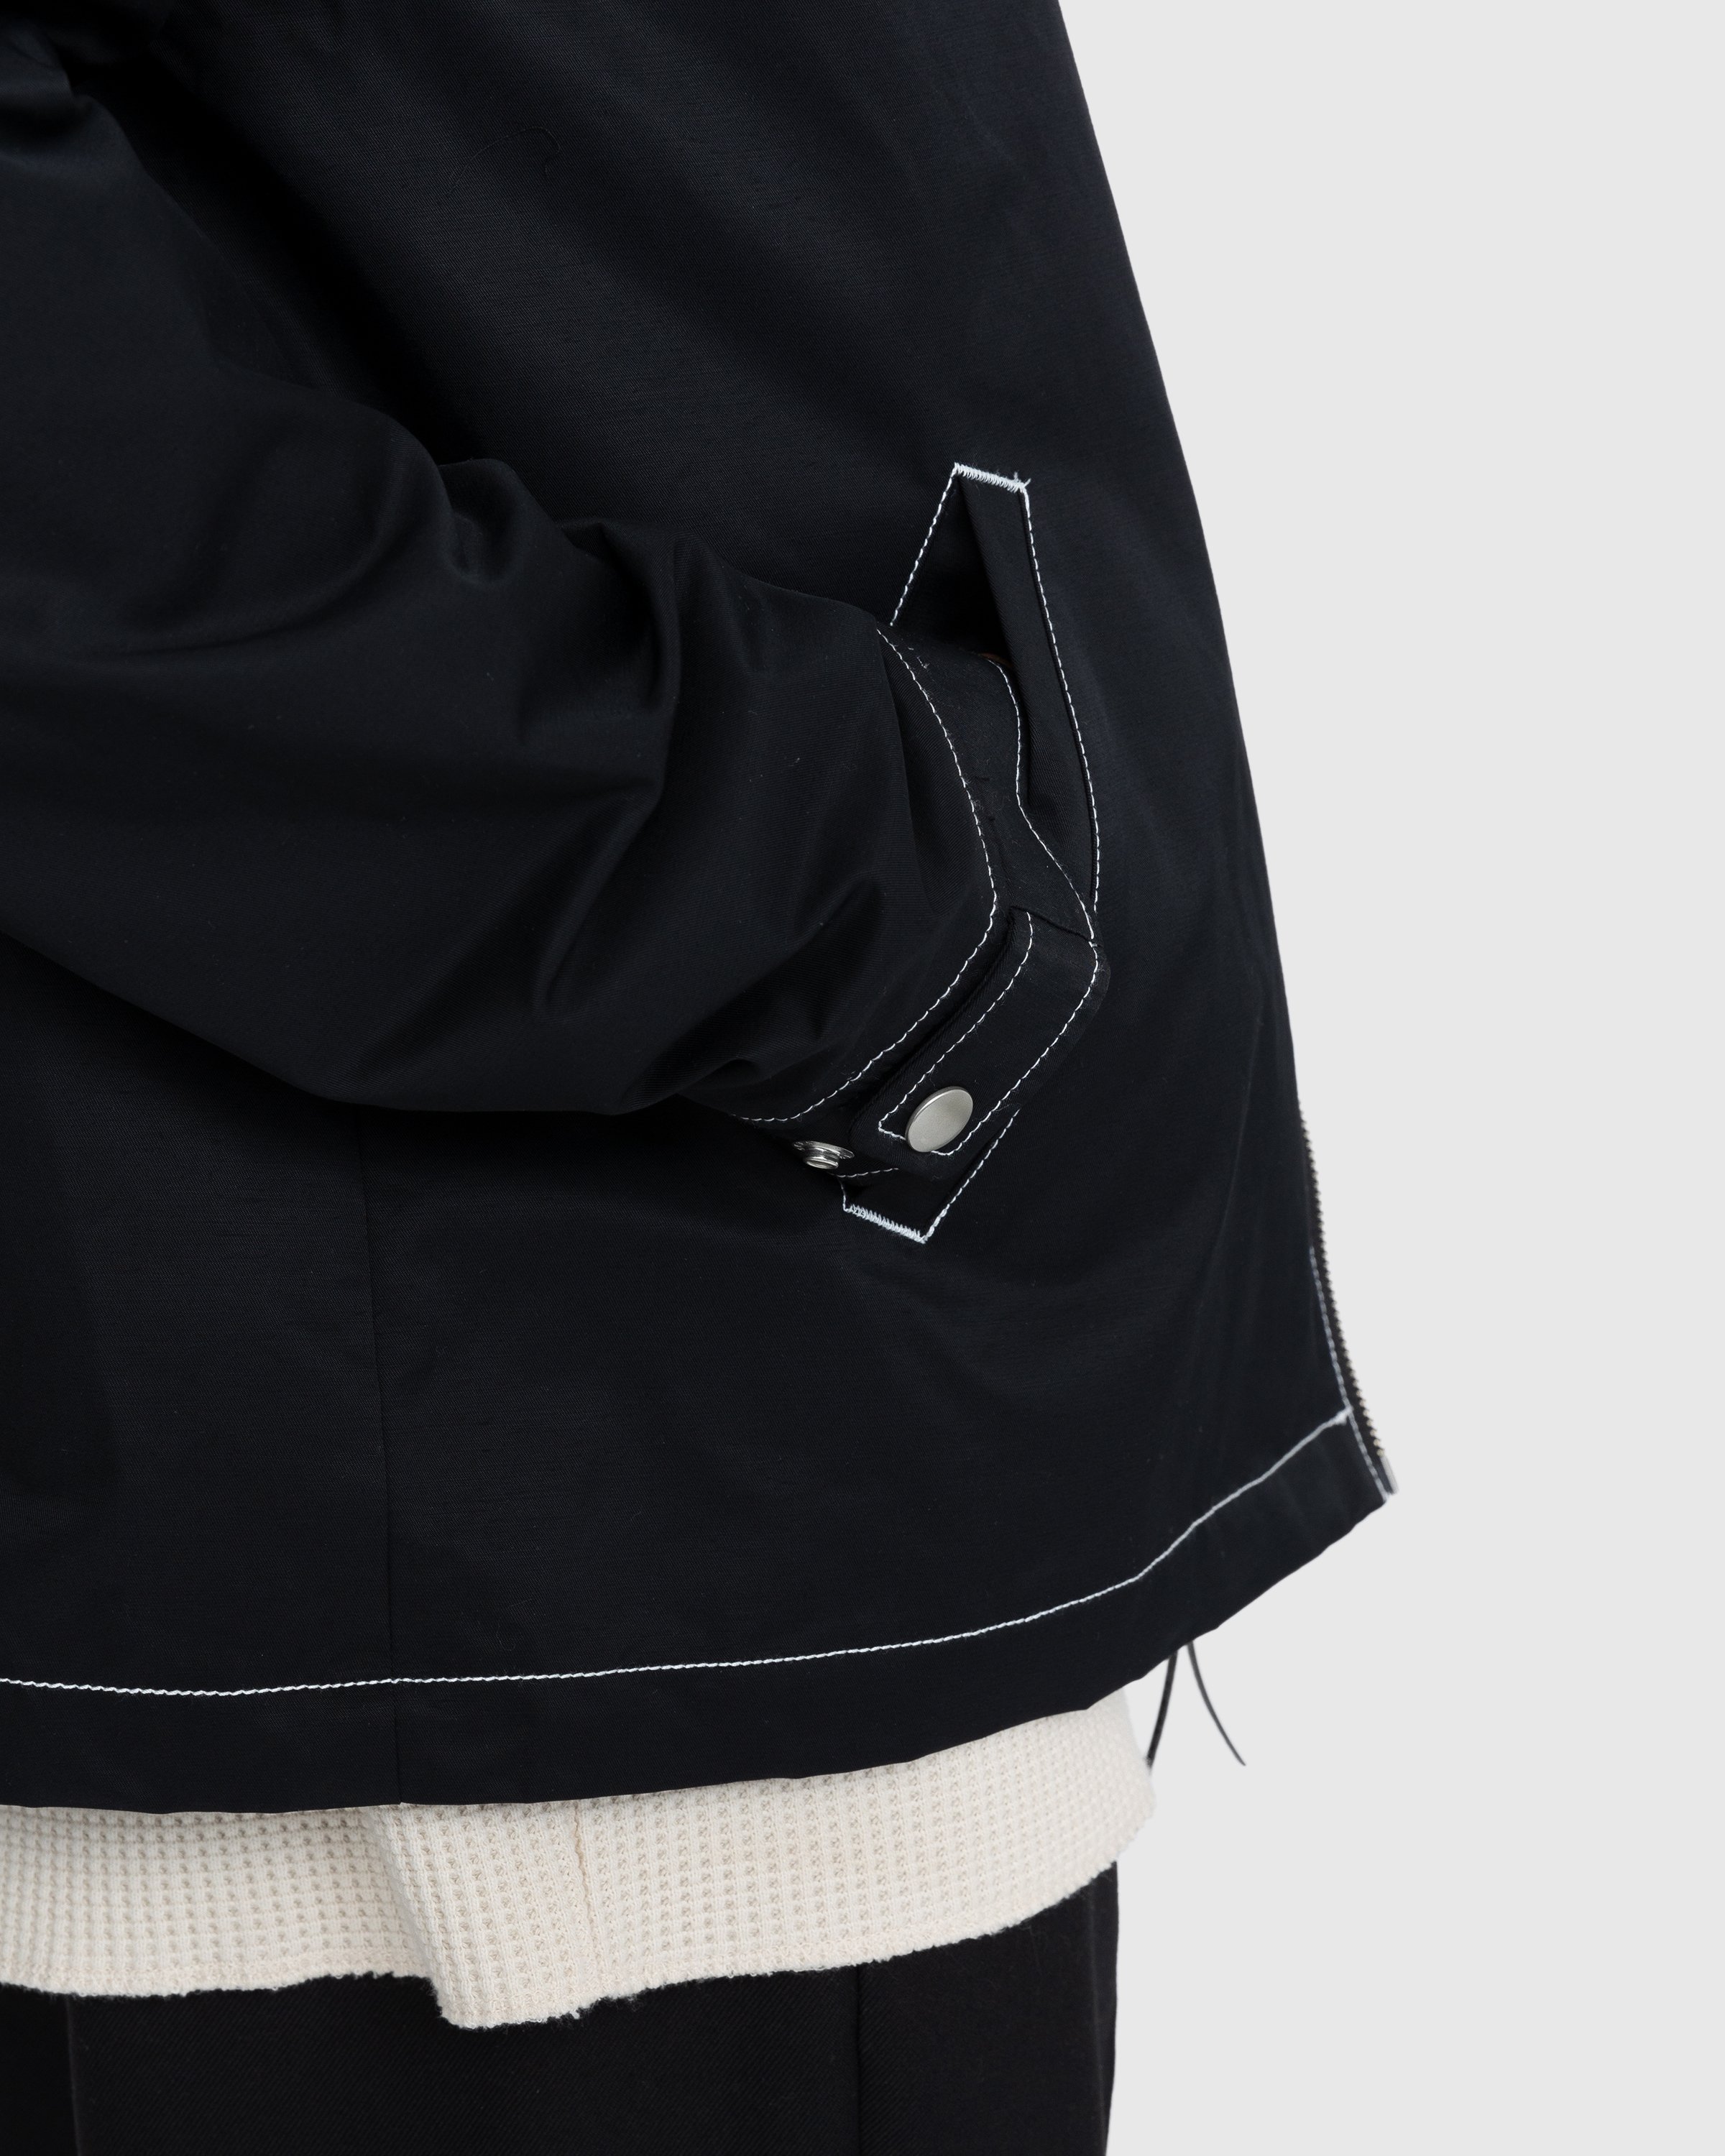 Highsnobiety - Brushed Nylon Jacket Black - Clothing - Black - Image 6